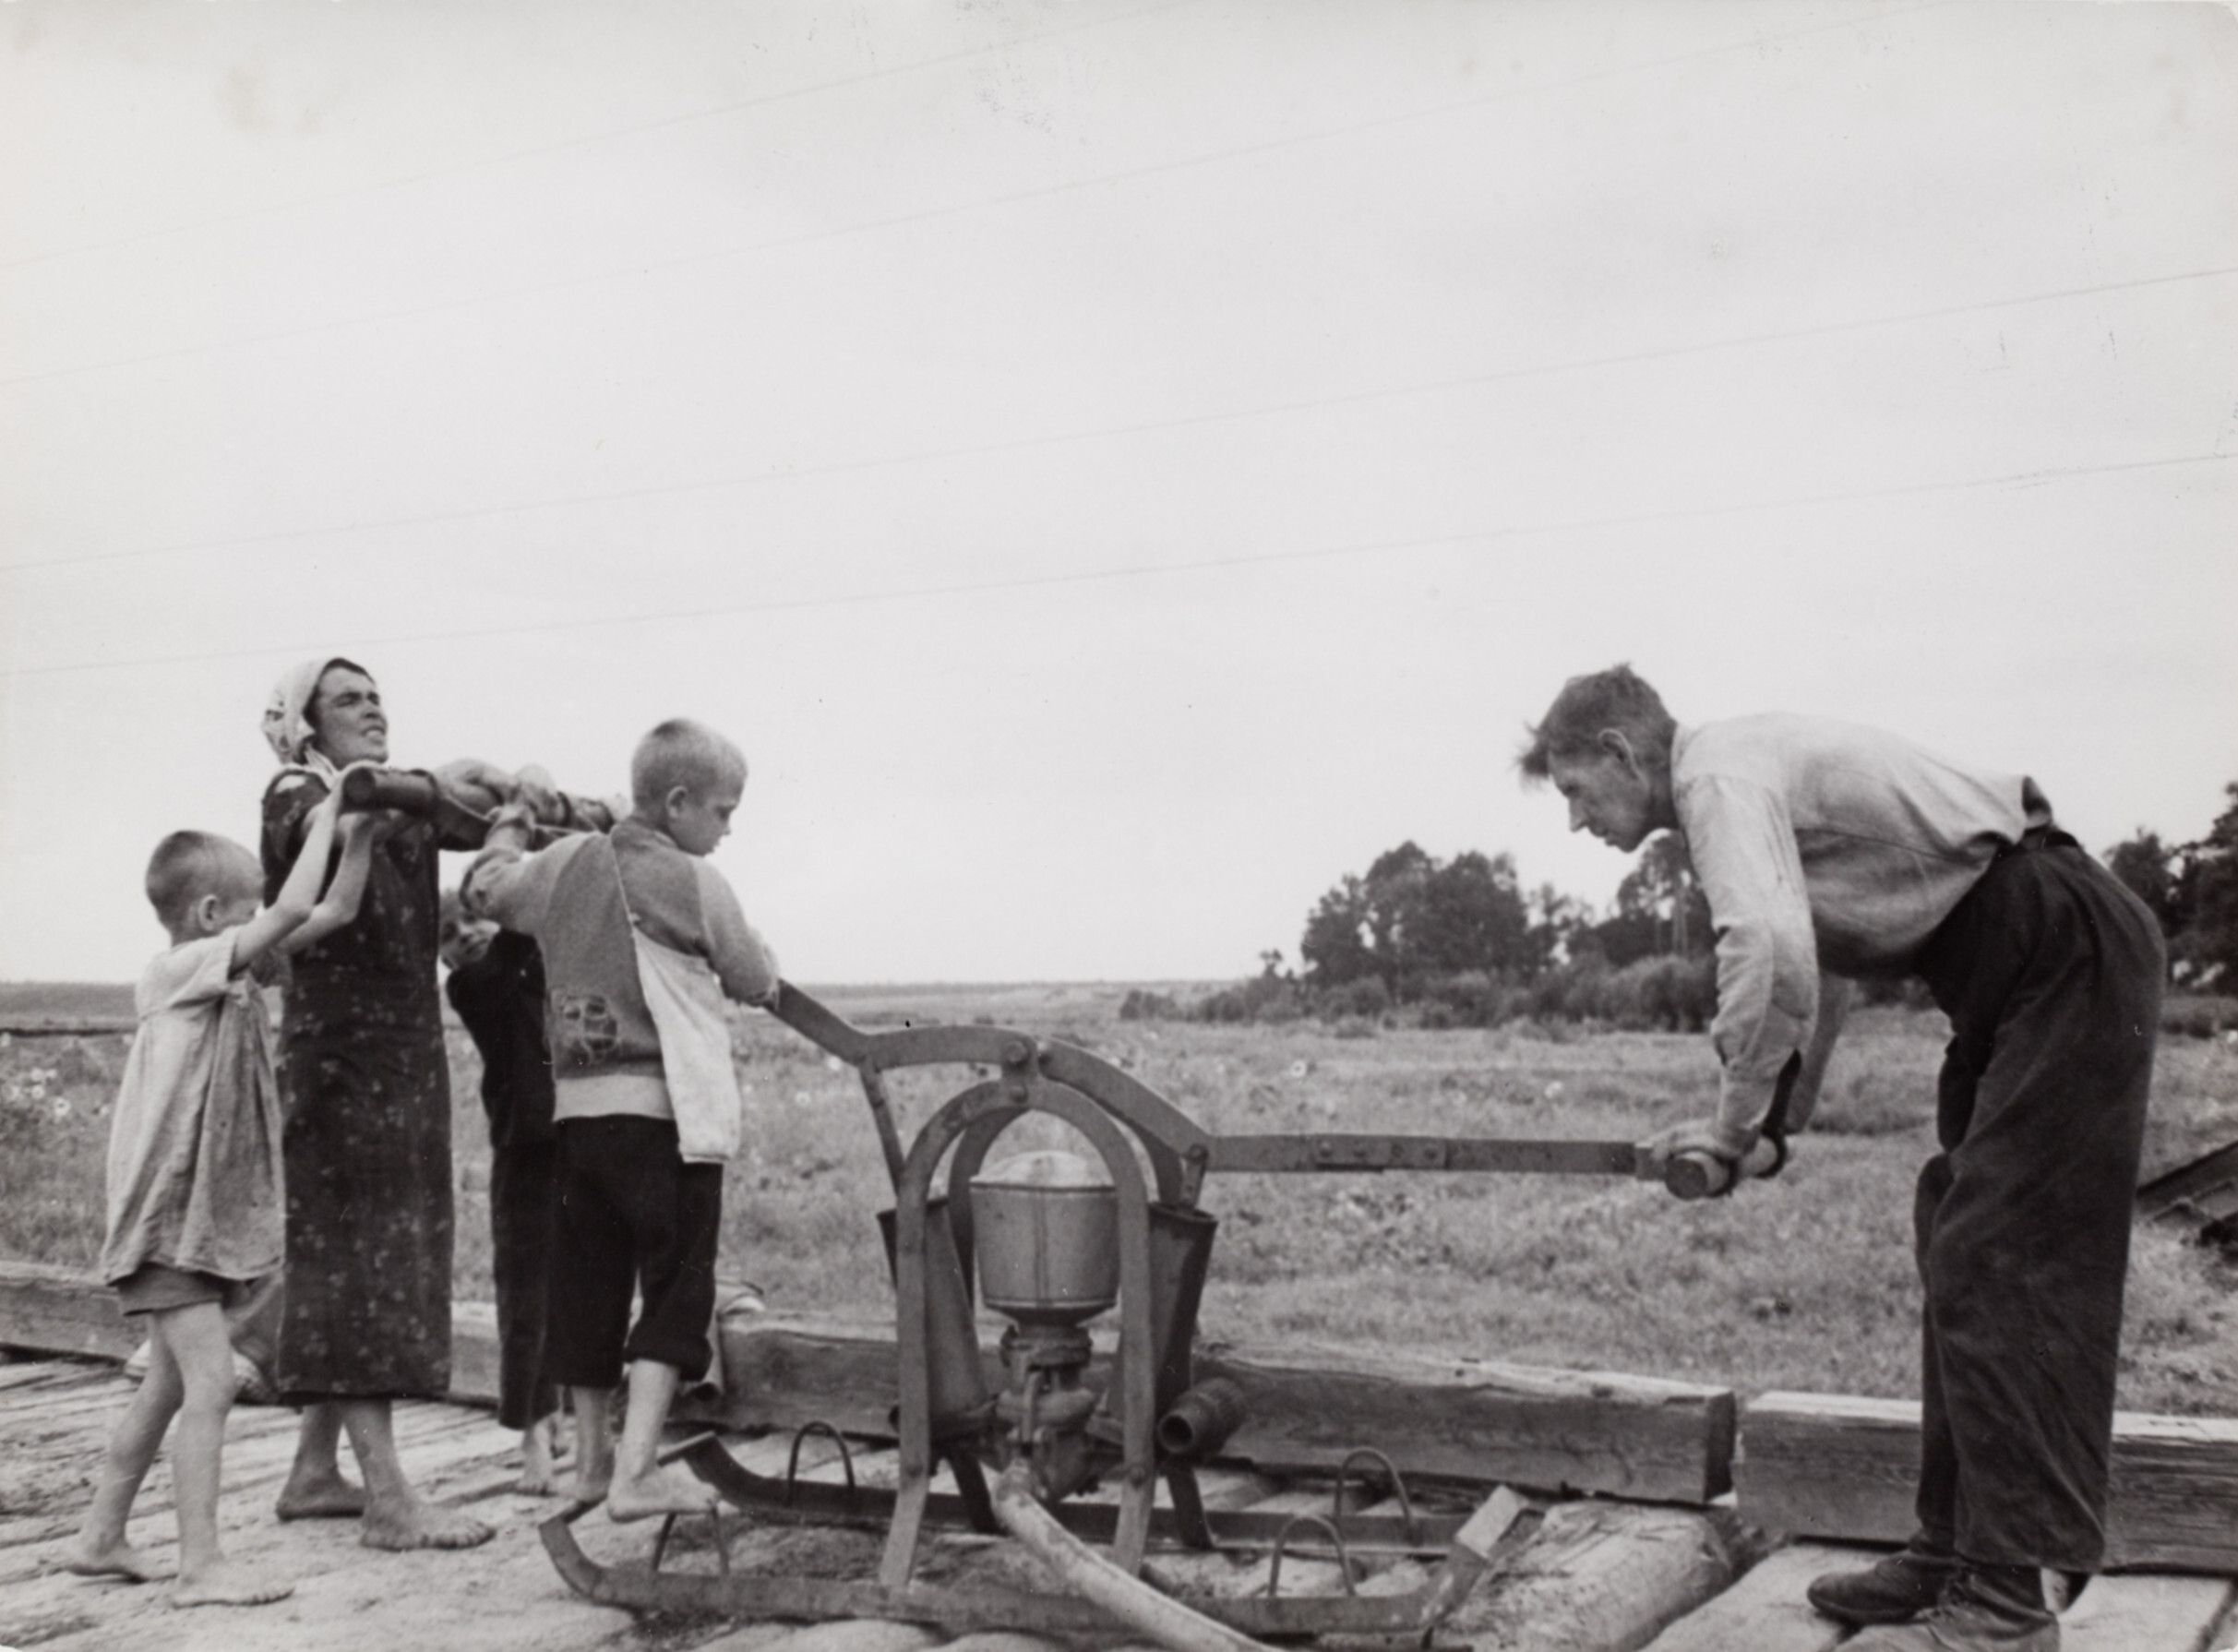 Семья качает воду, СССР, 1947 год. Фотограф Роберт Капа